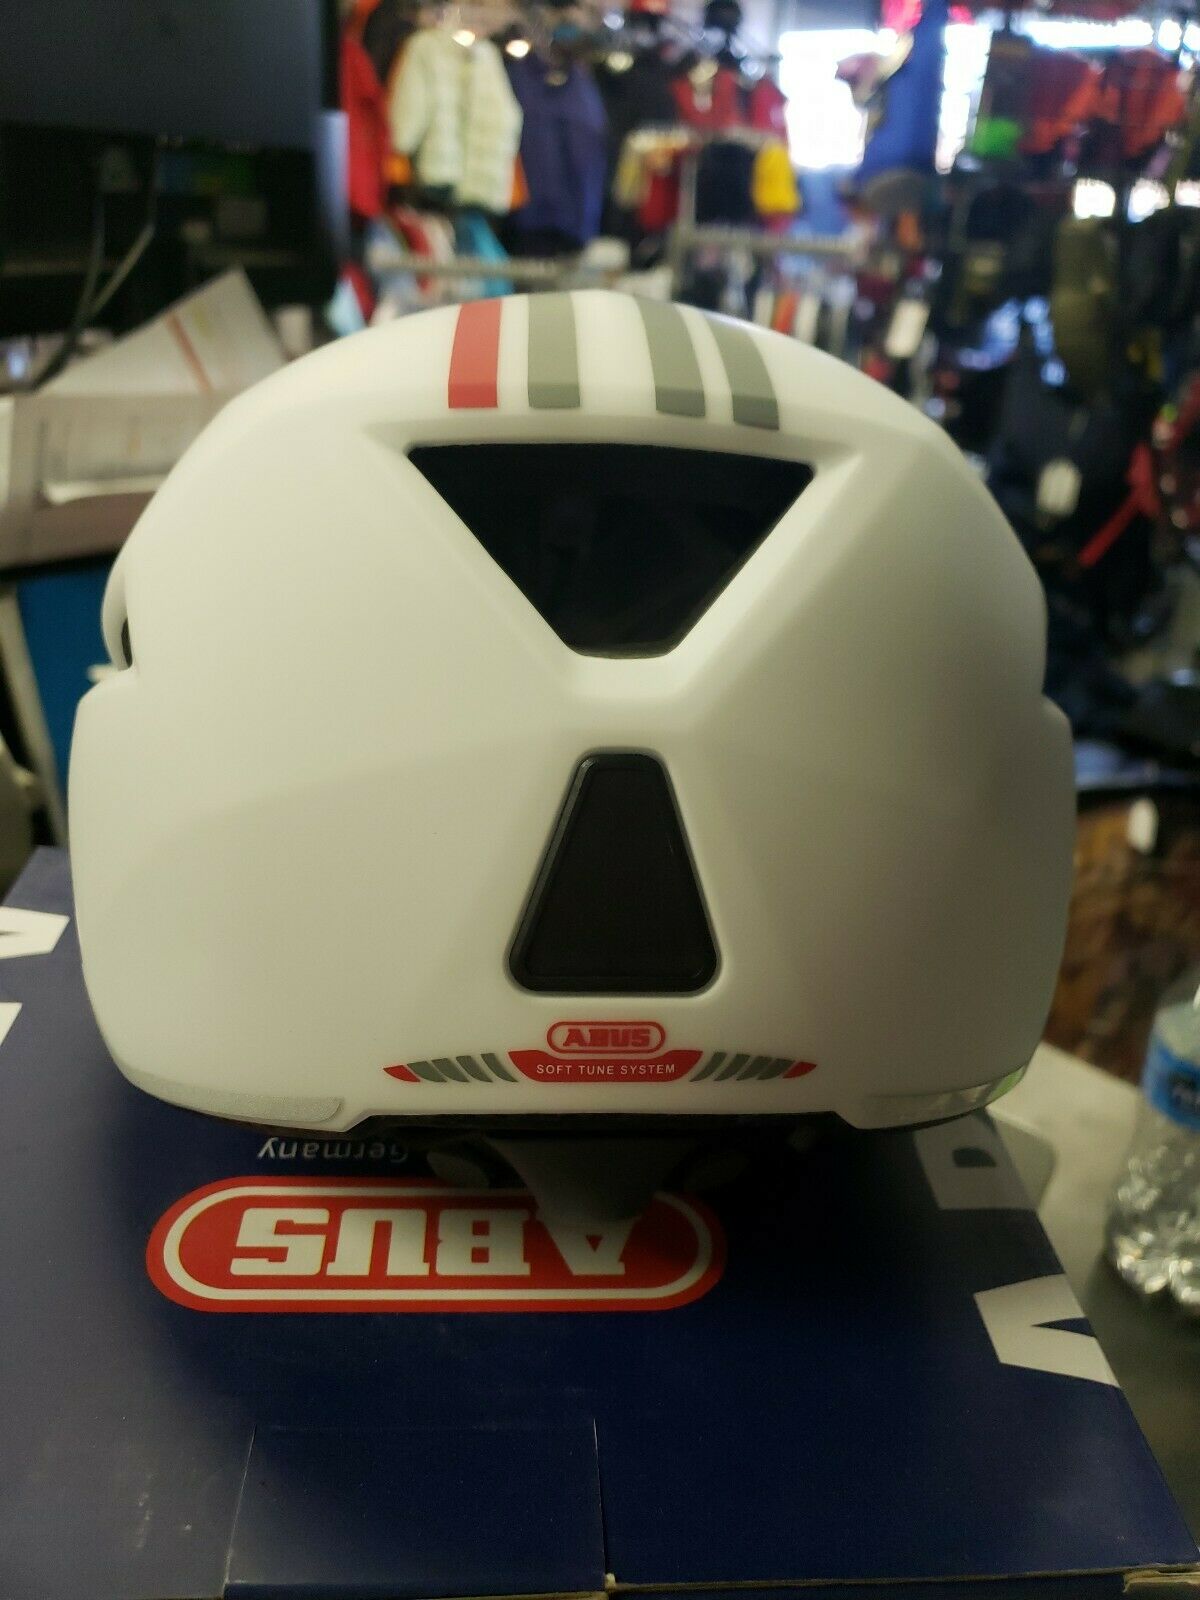 Abus Urban Bike Helmet Small White New Clearance